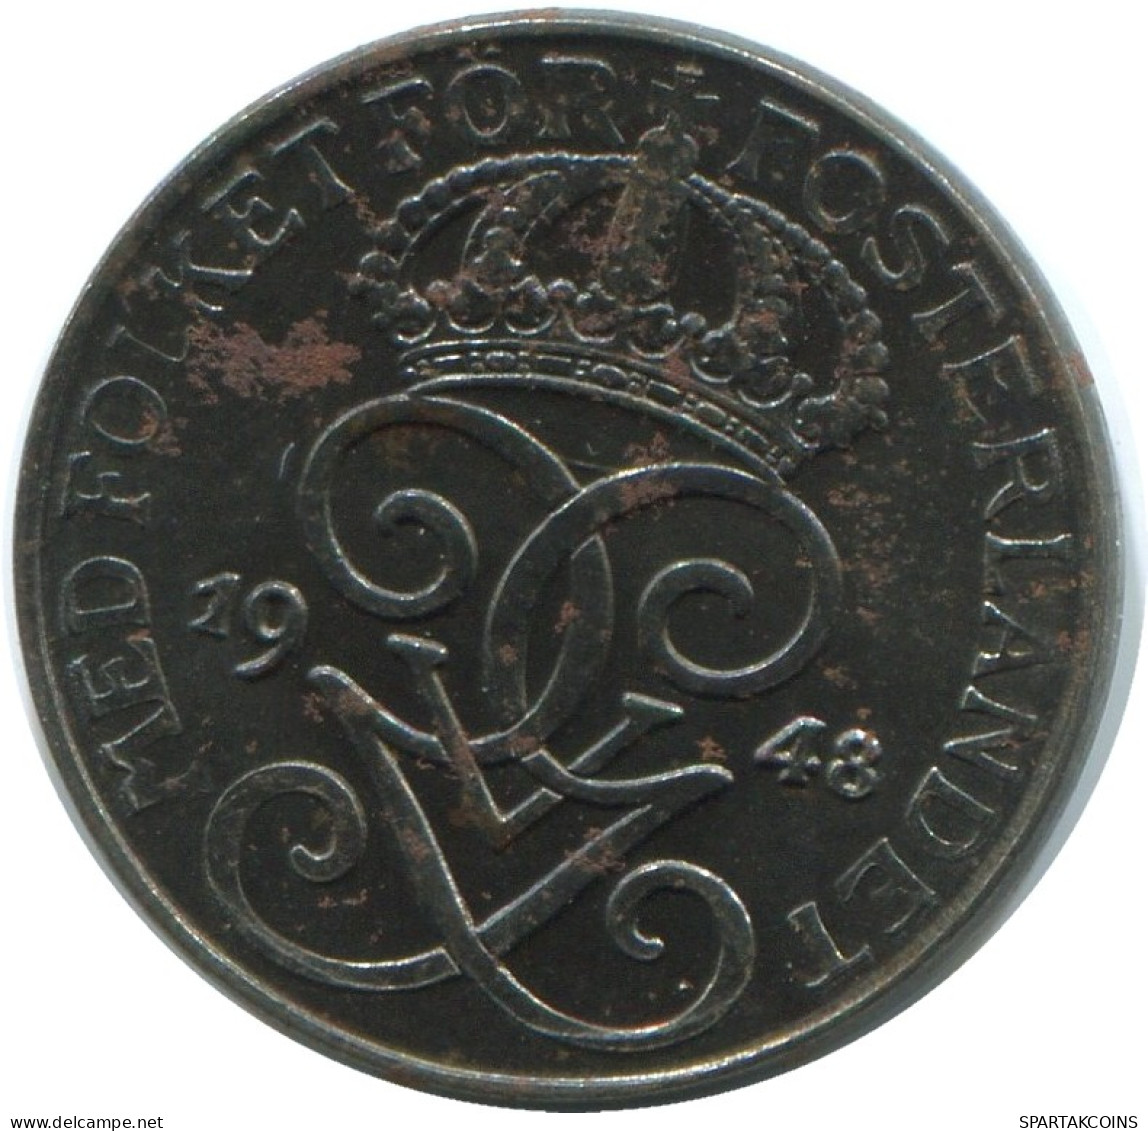 1 ORE 1948 SWEDEN Coin #AD265.2.U.A - Suecia